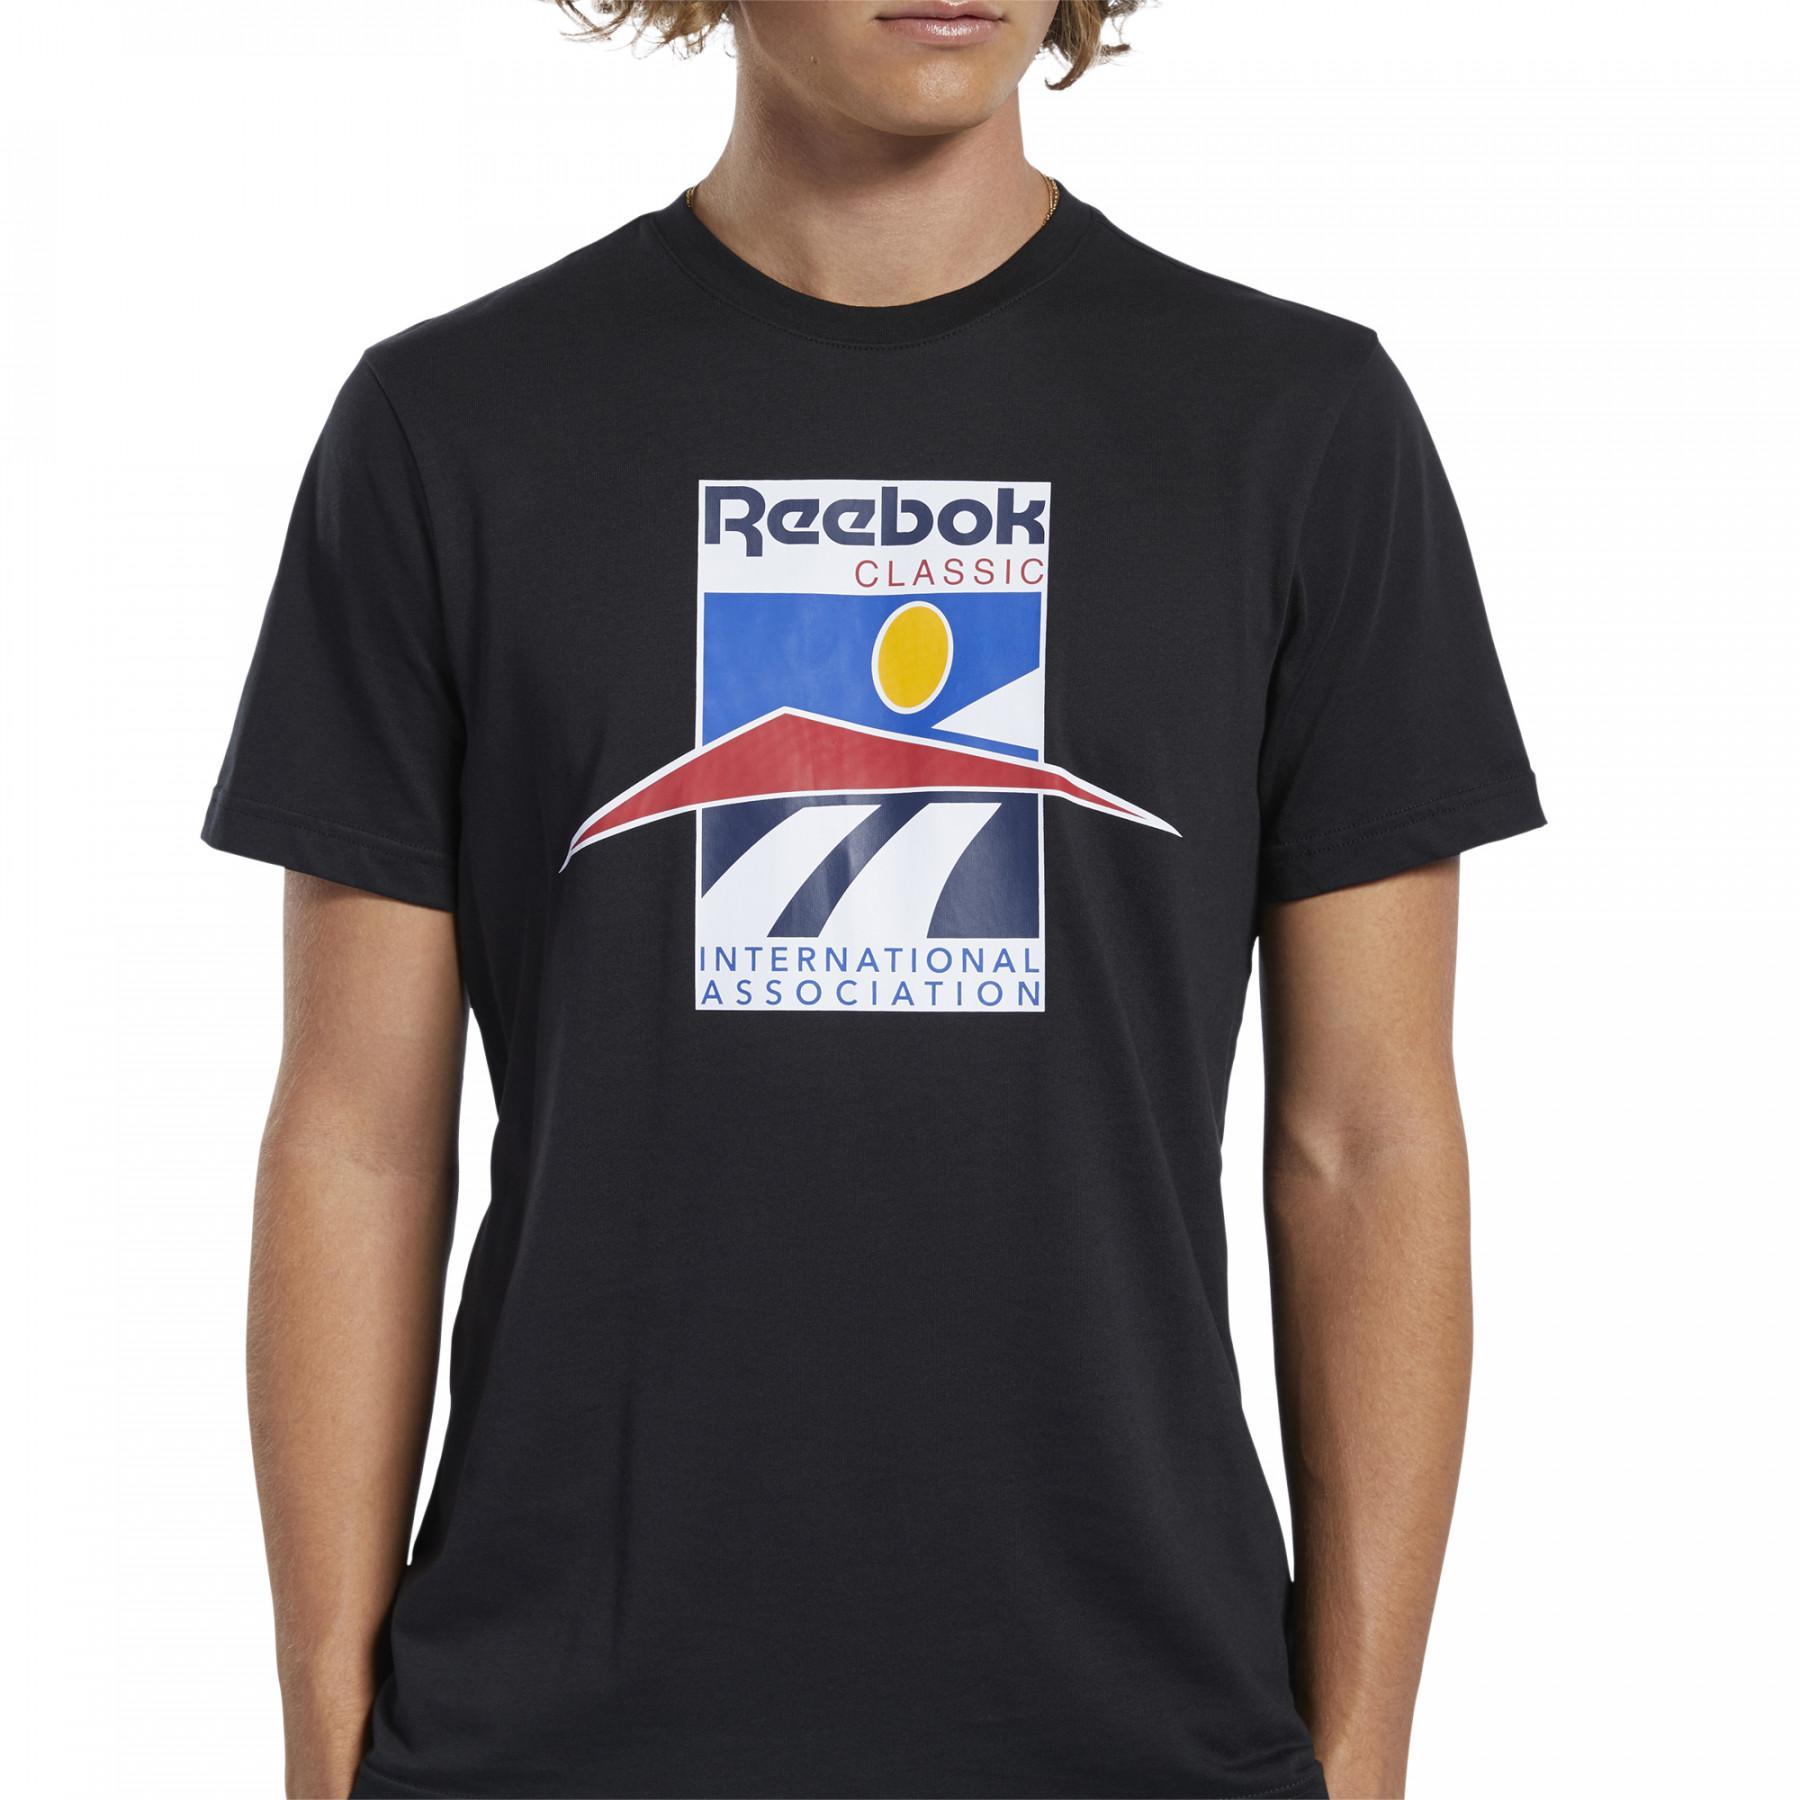 T-shirt Reebok International